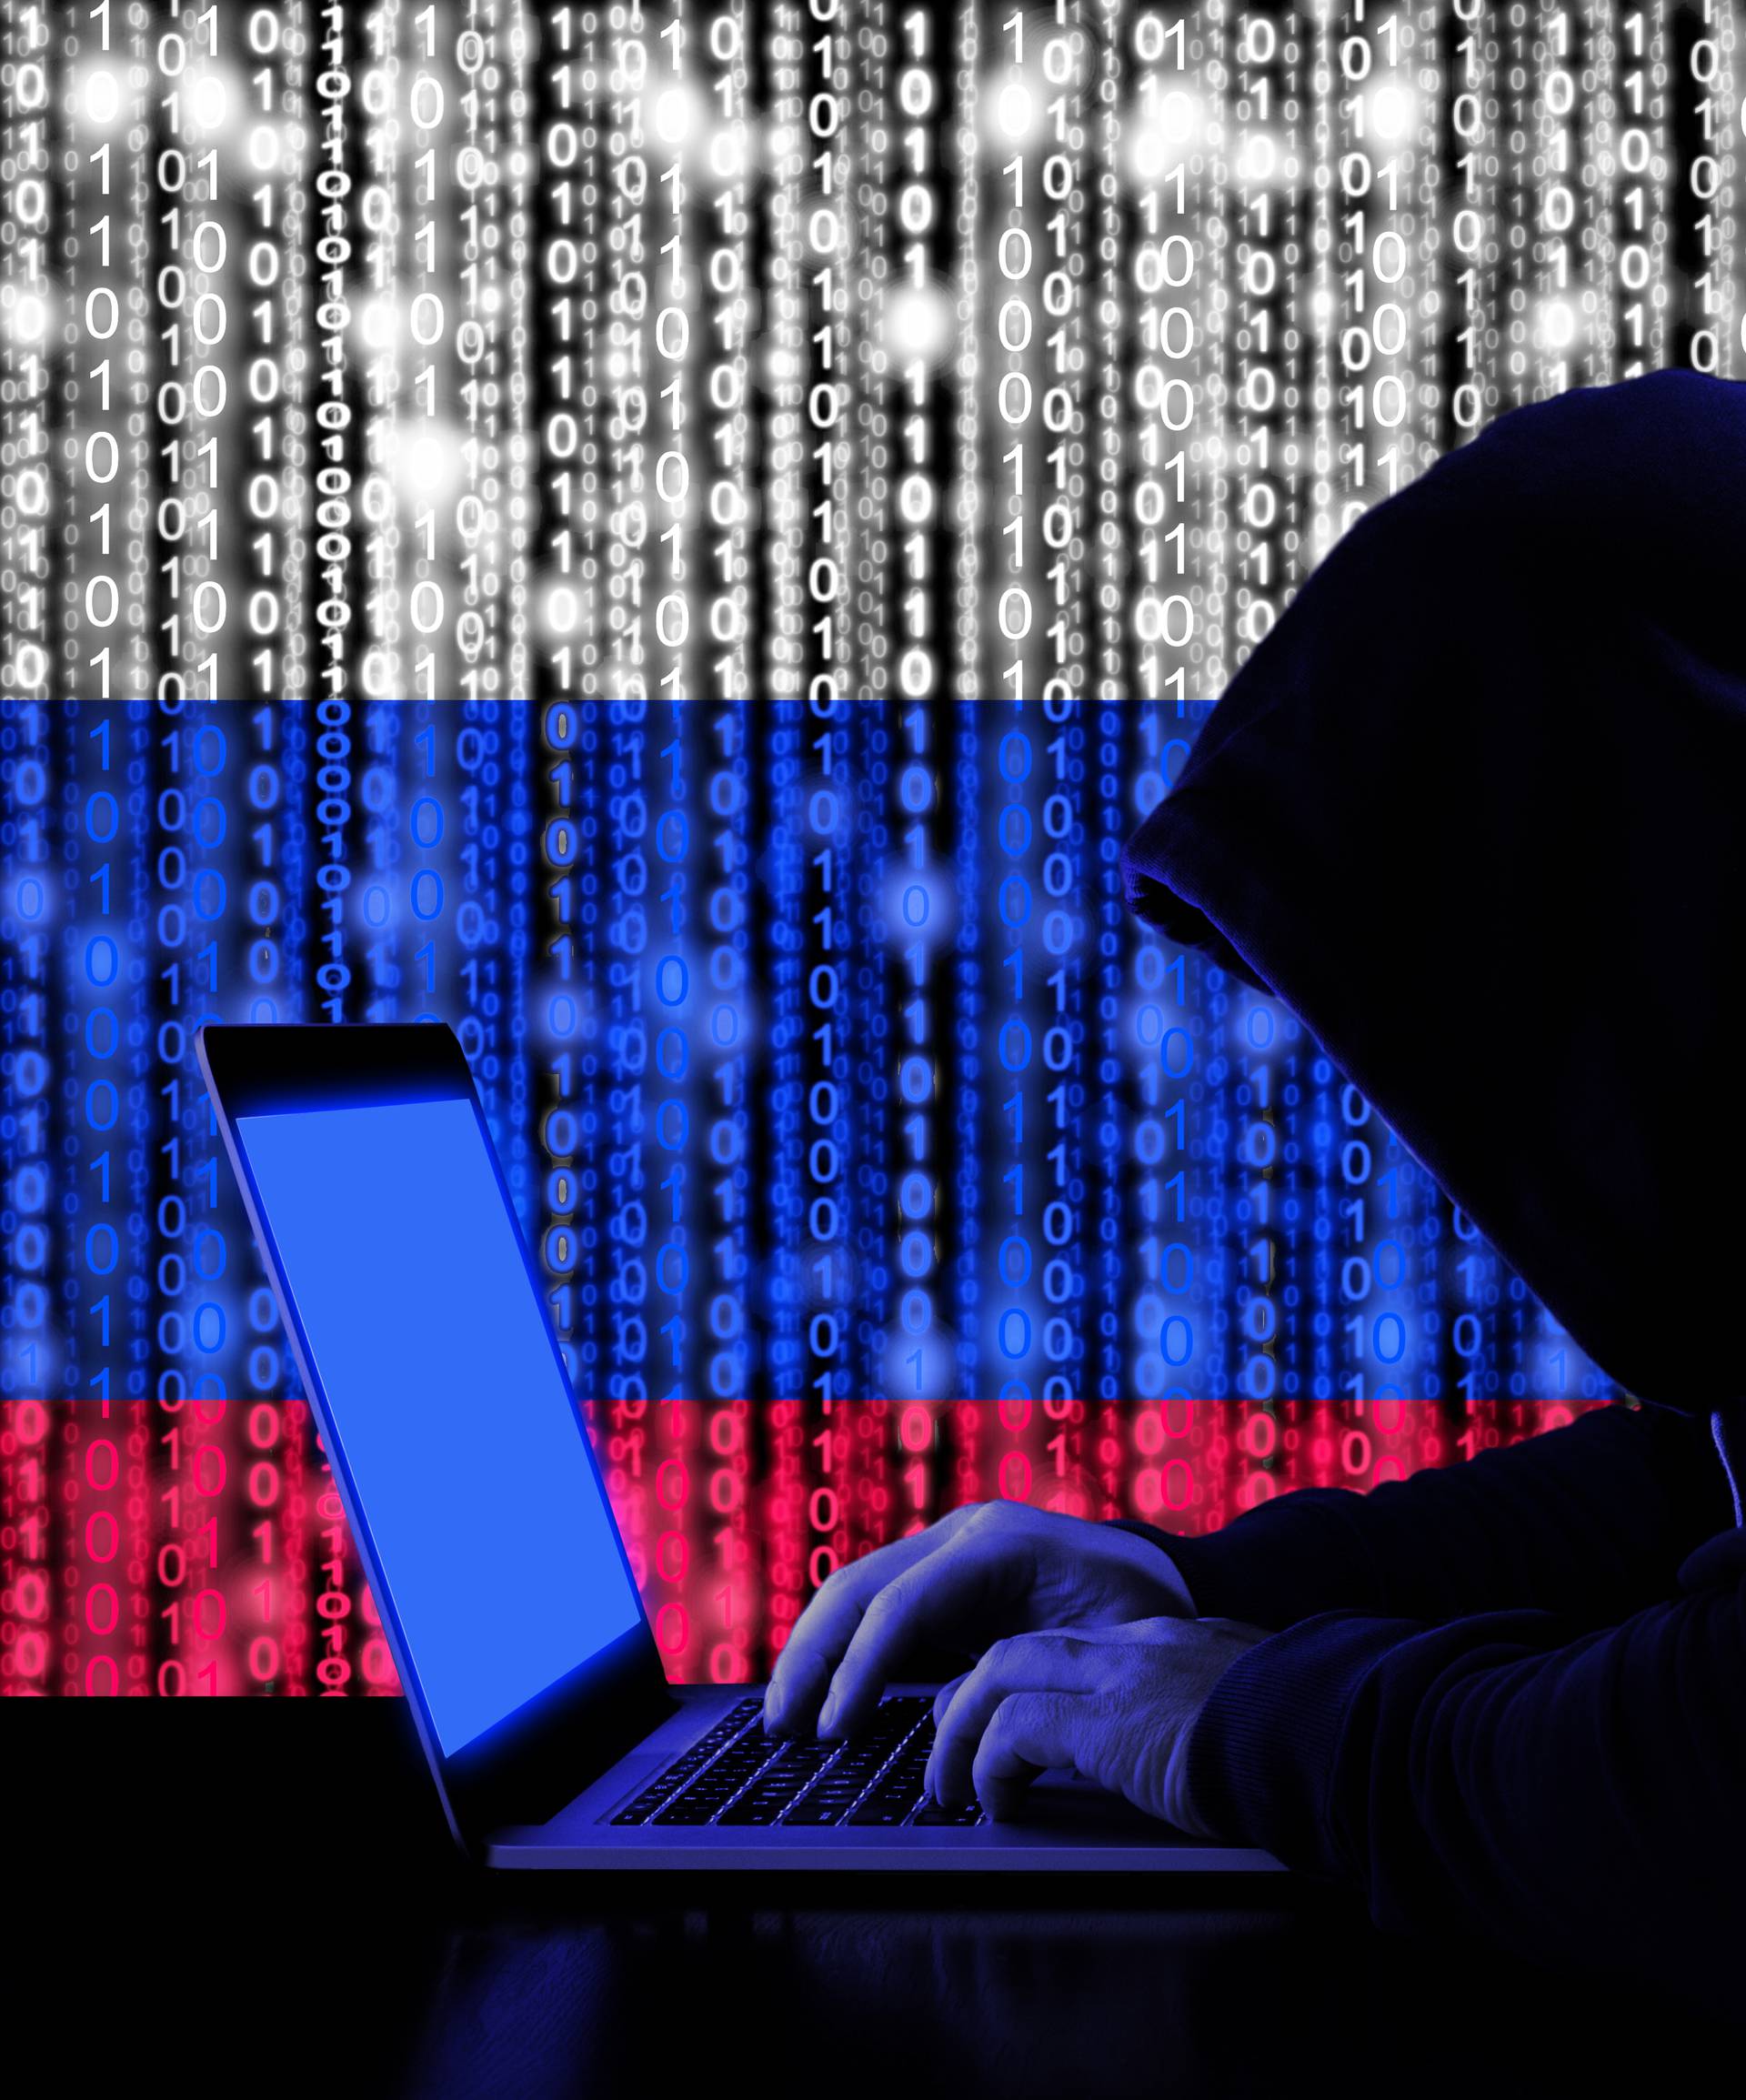 Hakiranje: Nakon Agrokora, Rusi sada osvajaju državni web